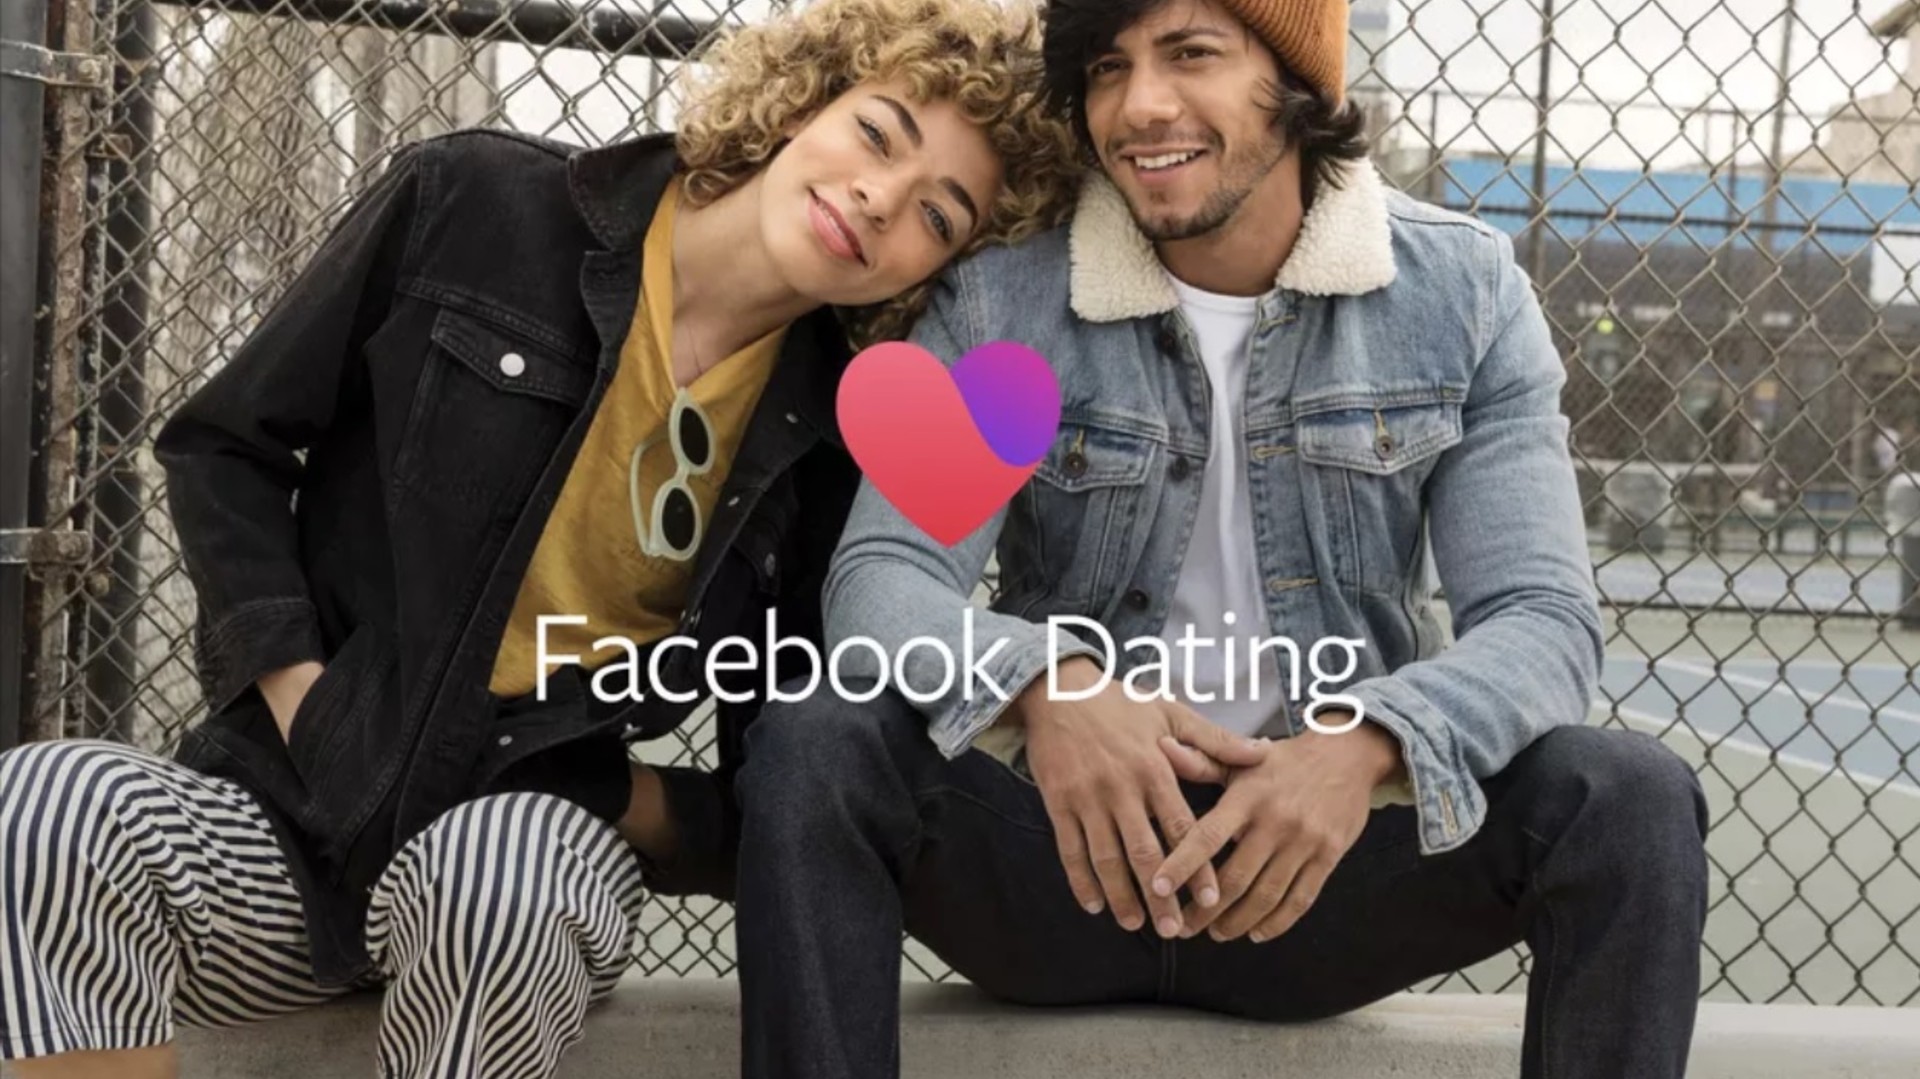 Facebook incluye nuevas opciones para “hallar el amor” en su herramienta de  Parejas - Infobae